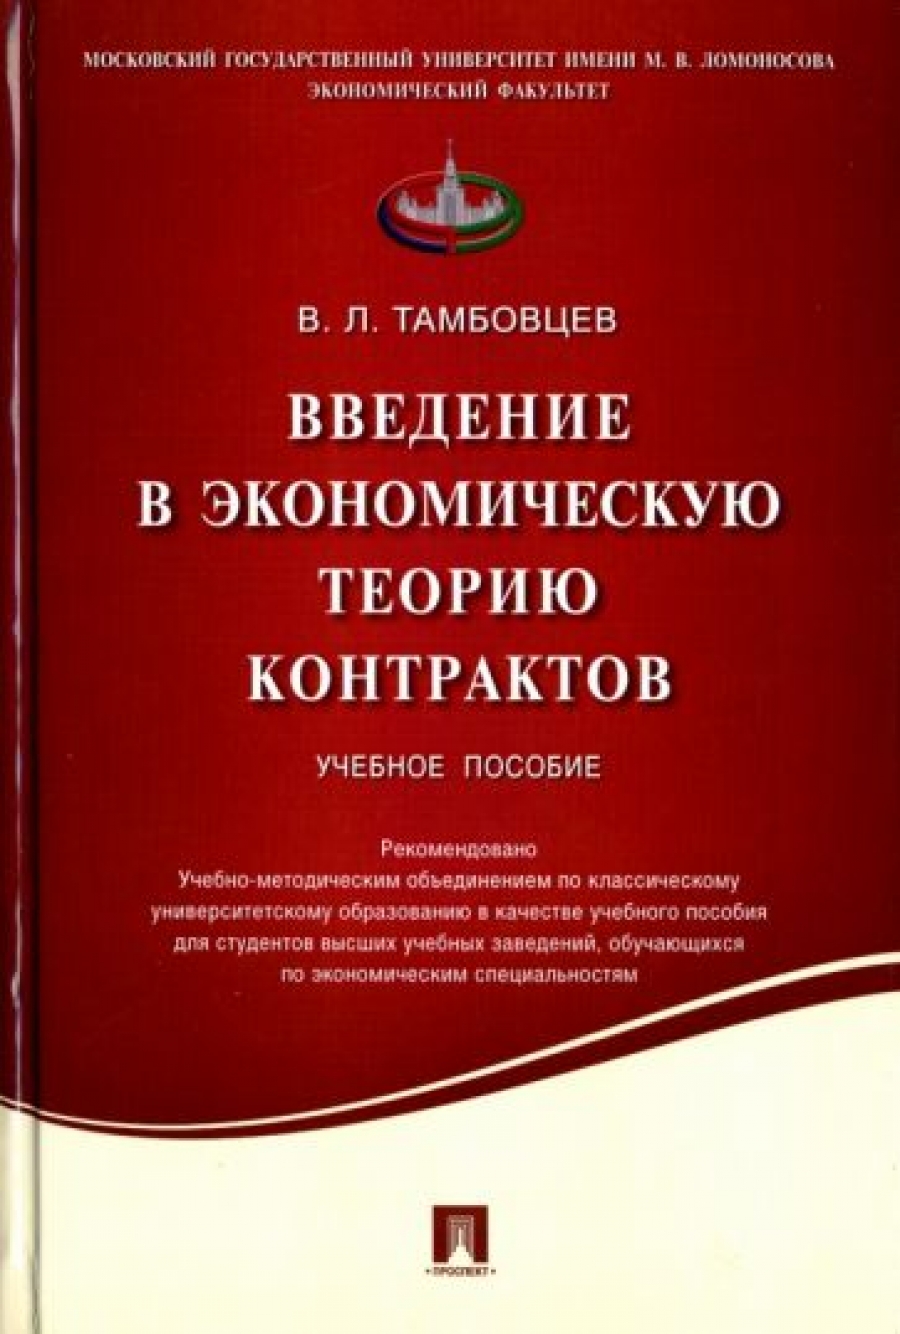 Тамбовцев В.Л. - Введение в экономическую теорию контрактов 